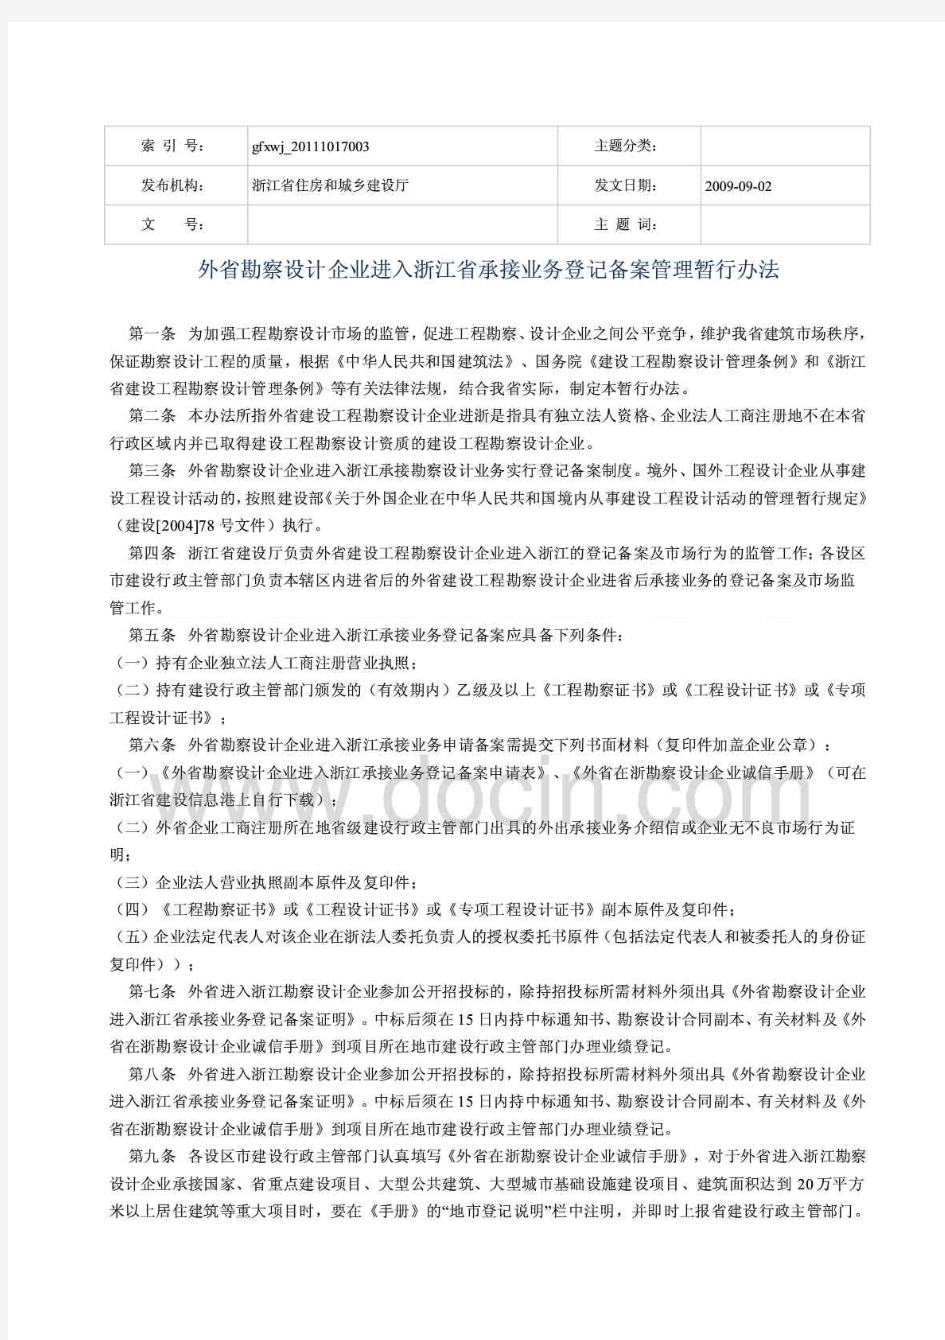 外省勘察设计企业进入浙江省承接业务登记备案管理暂行办法